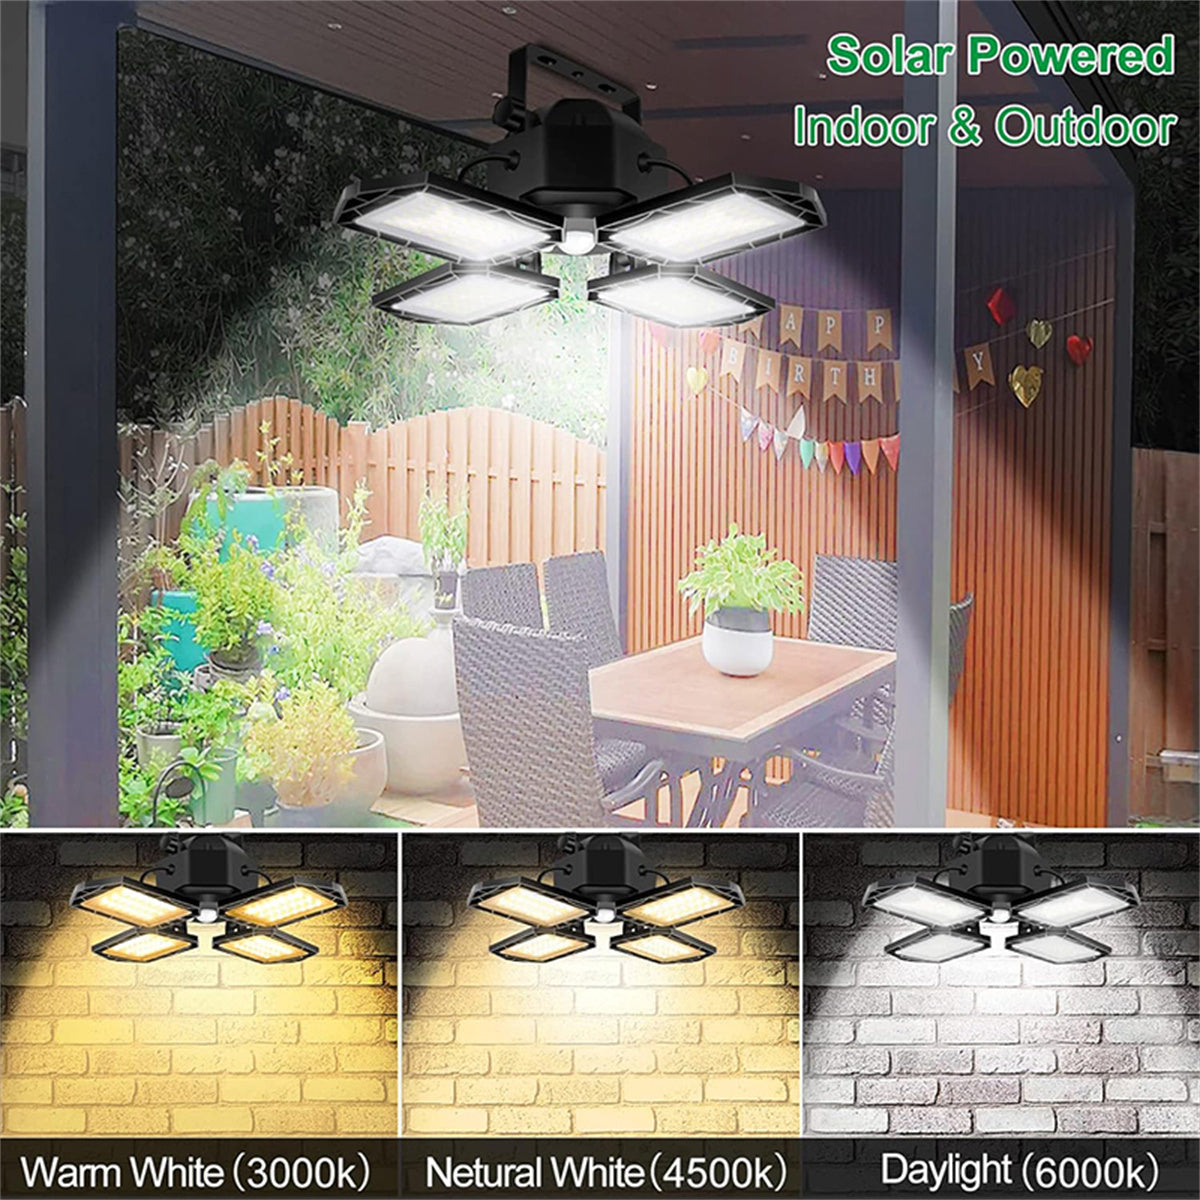 Solar Shed Lights, 168LED 5500LM Solar Pendant Light Indoor Outdoor, Motion Sensor Solar Lights with Remote Control, 4-Leaf Adjustable Lights for Home Yard Garage